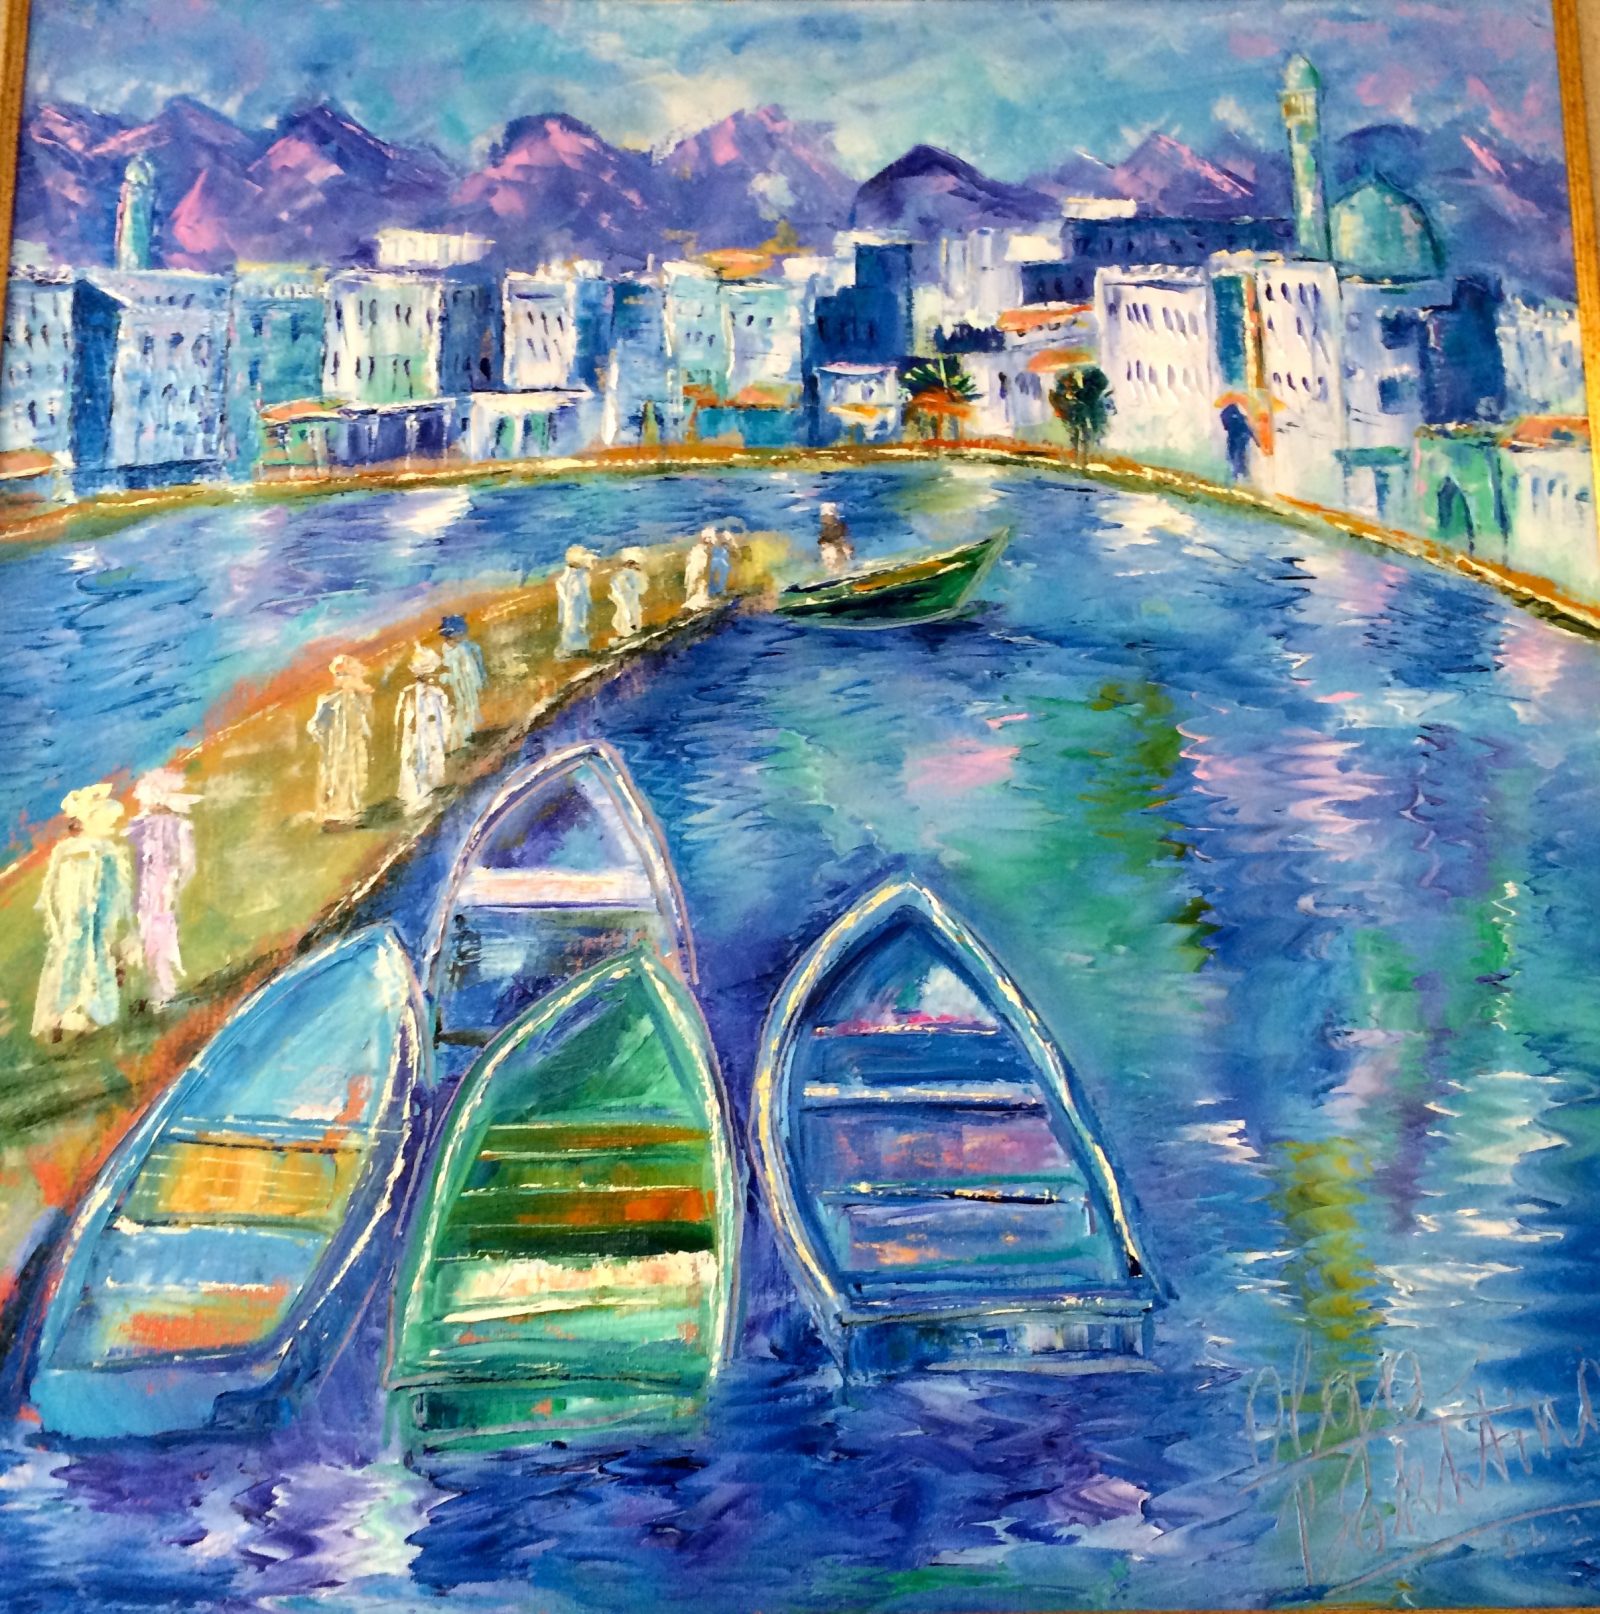 Morning Corniche, Oman [2011, 60x70cm, oil on canvas, For Sale: $1200]